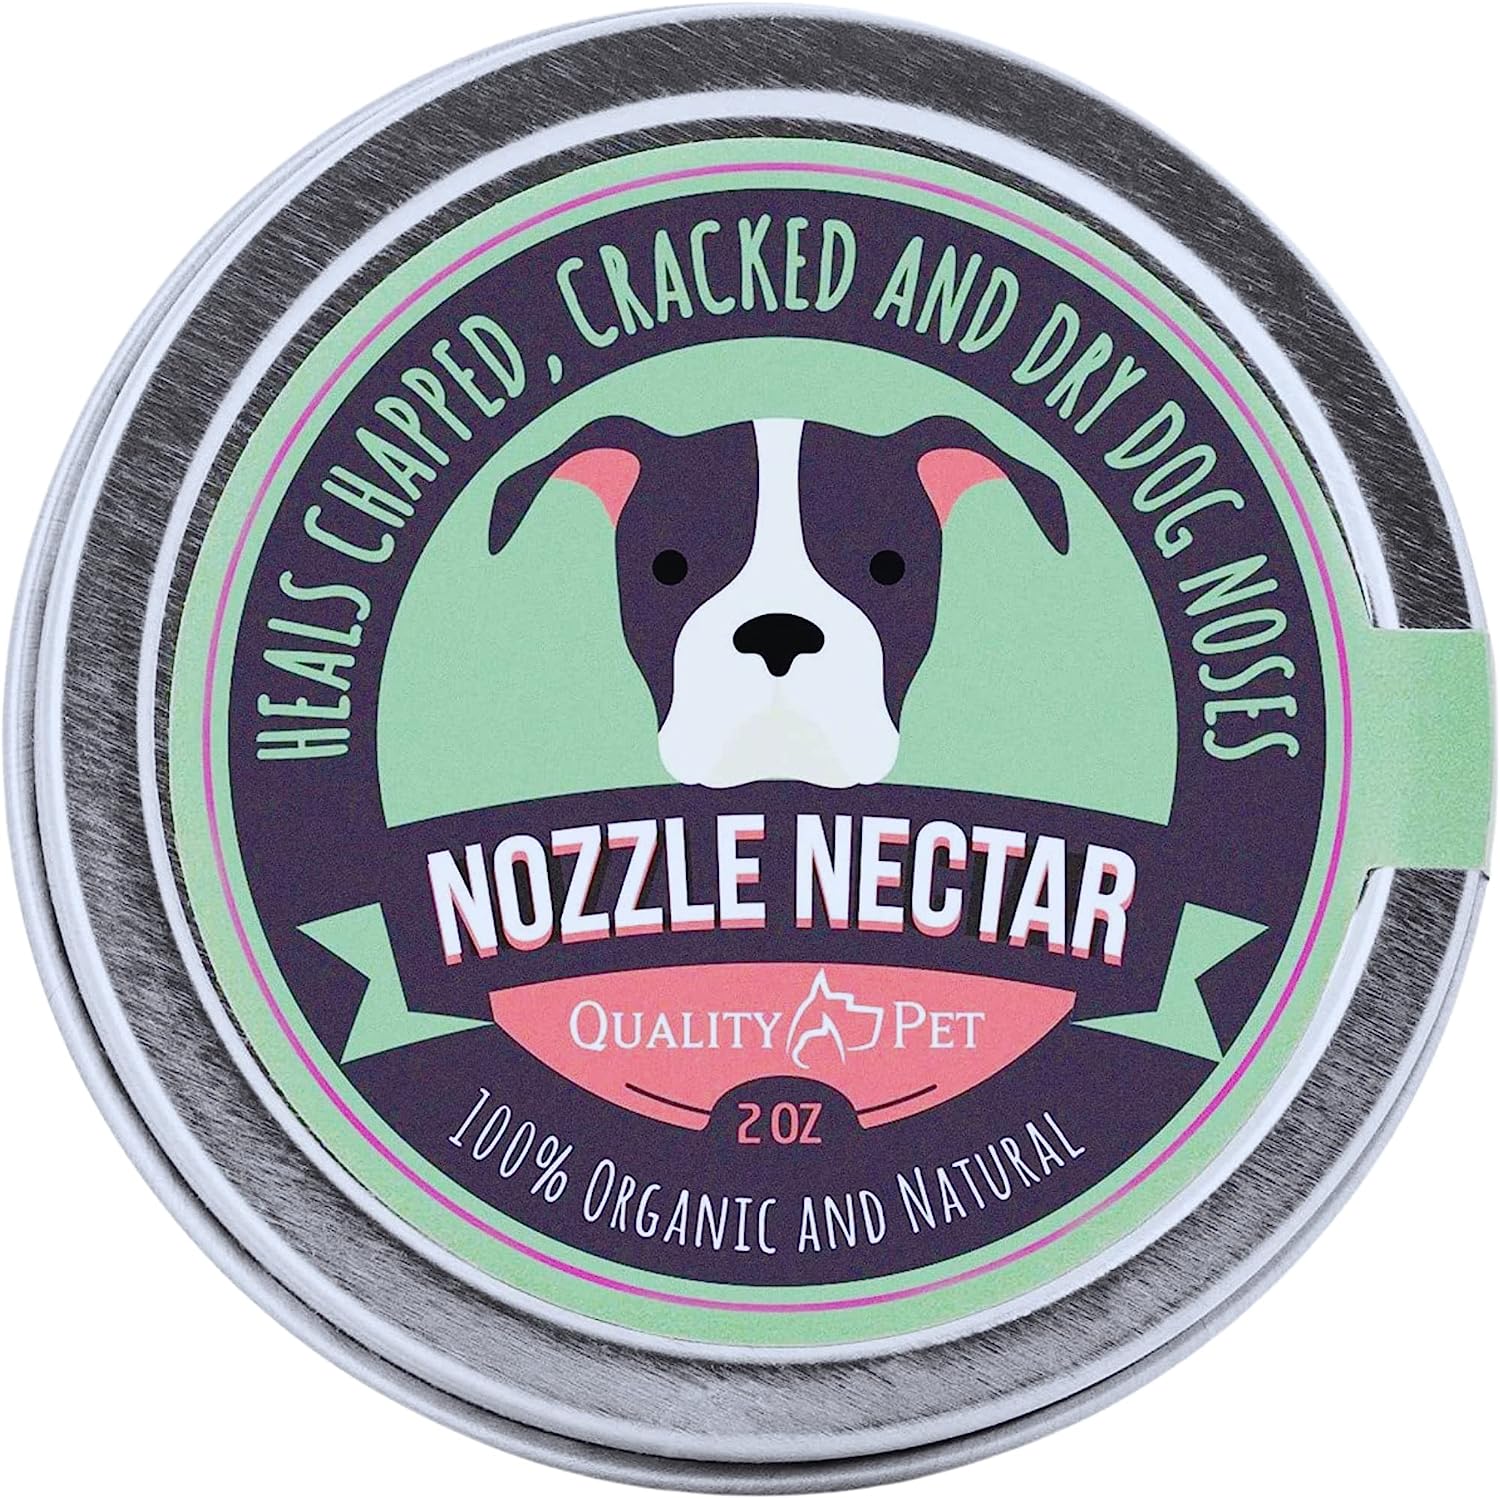 Nozzle Nectar Dog Nose Balm